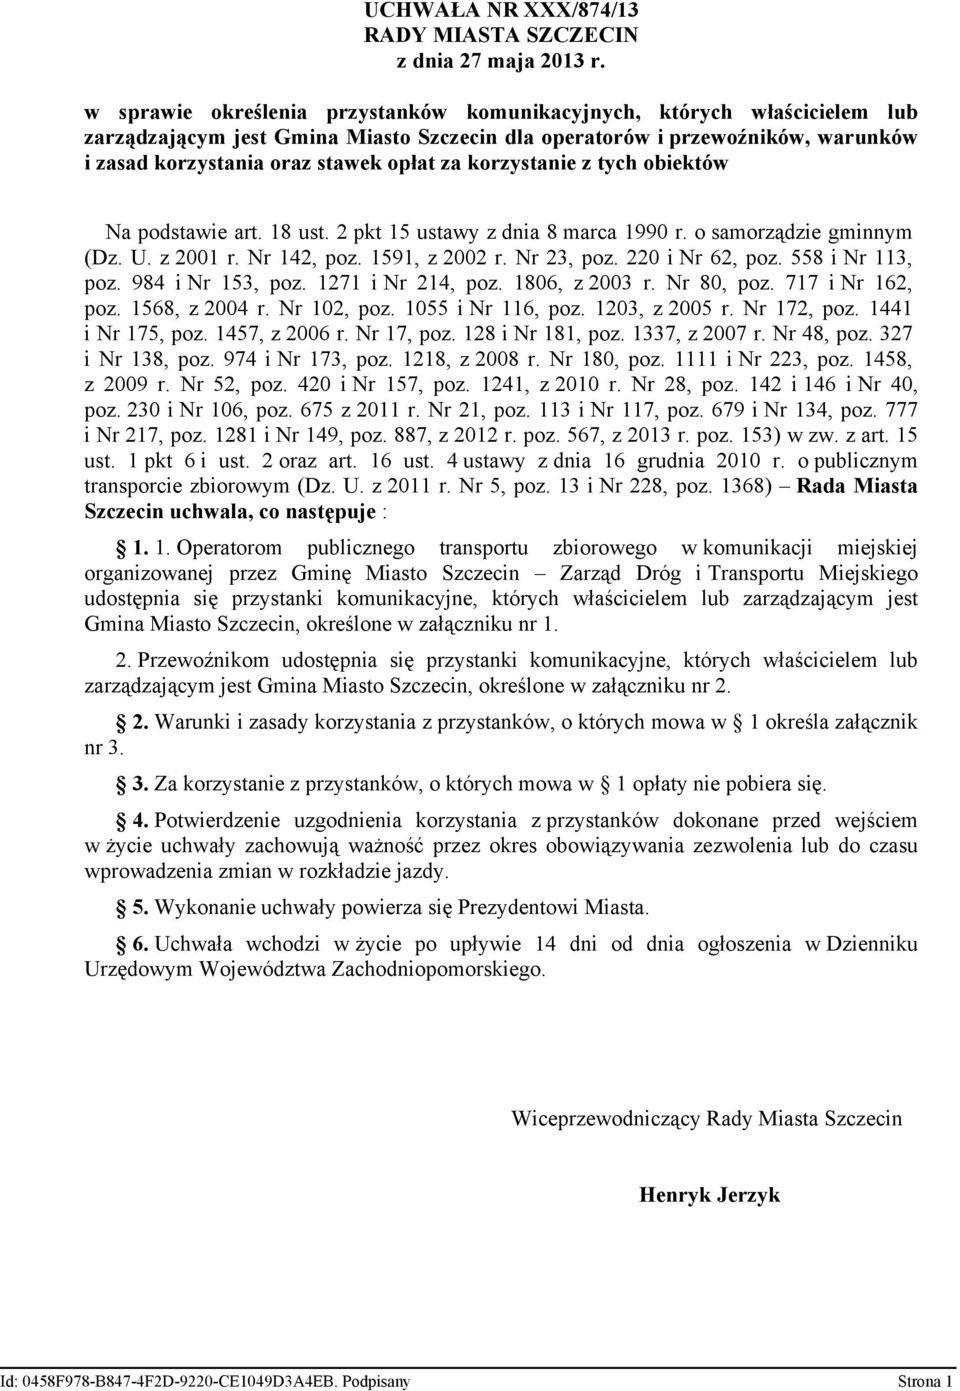 UCHWAŁA NR XXX/874/13 RADY MIASTA SZCZECIN z dnia 27 maja 2013 r. - PDF  Darmowe pobieranie